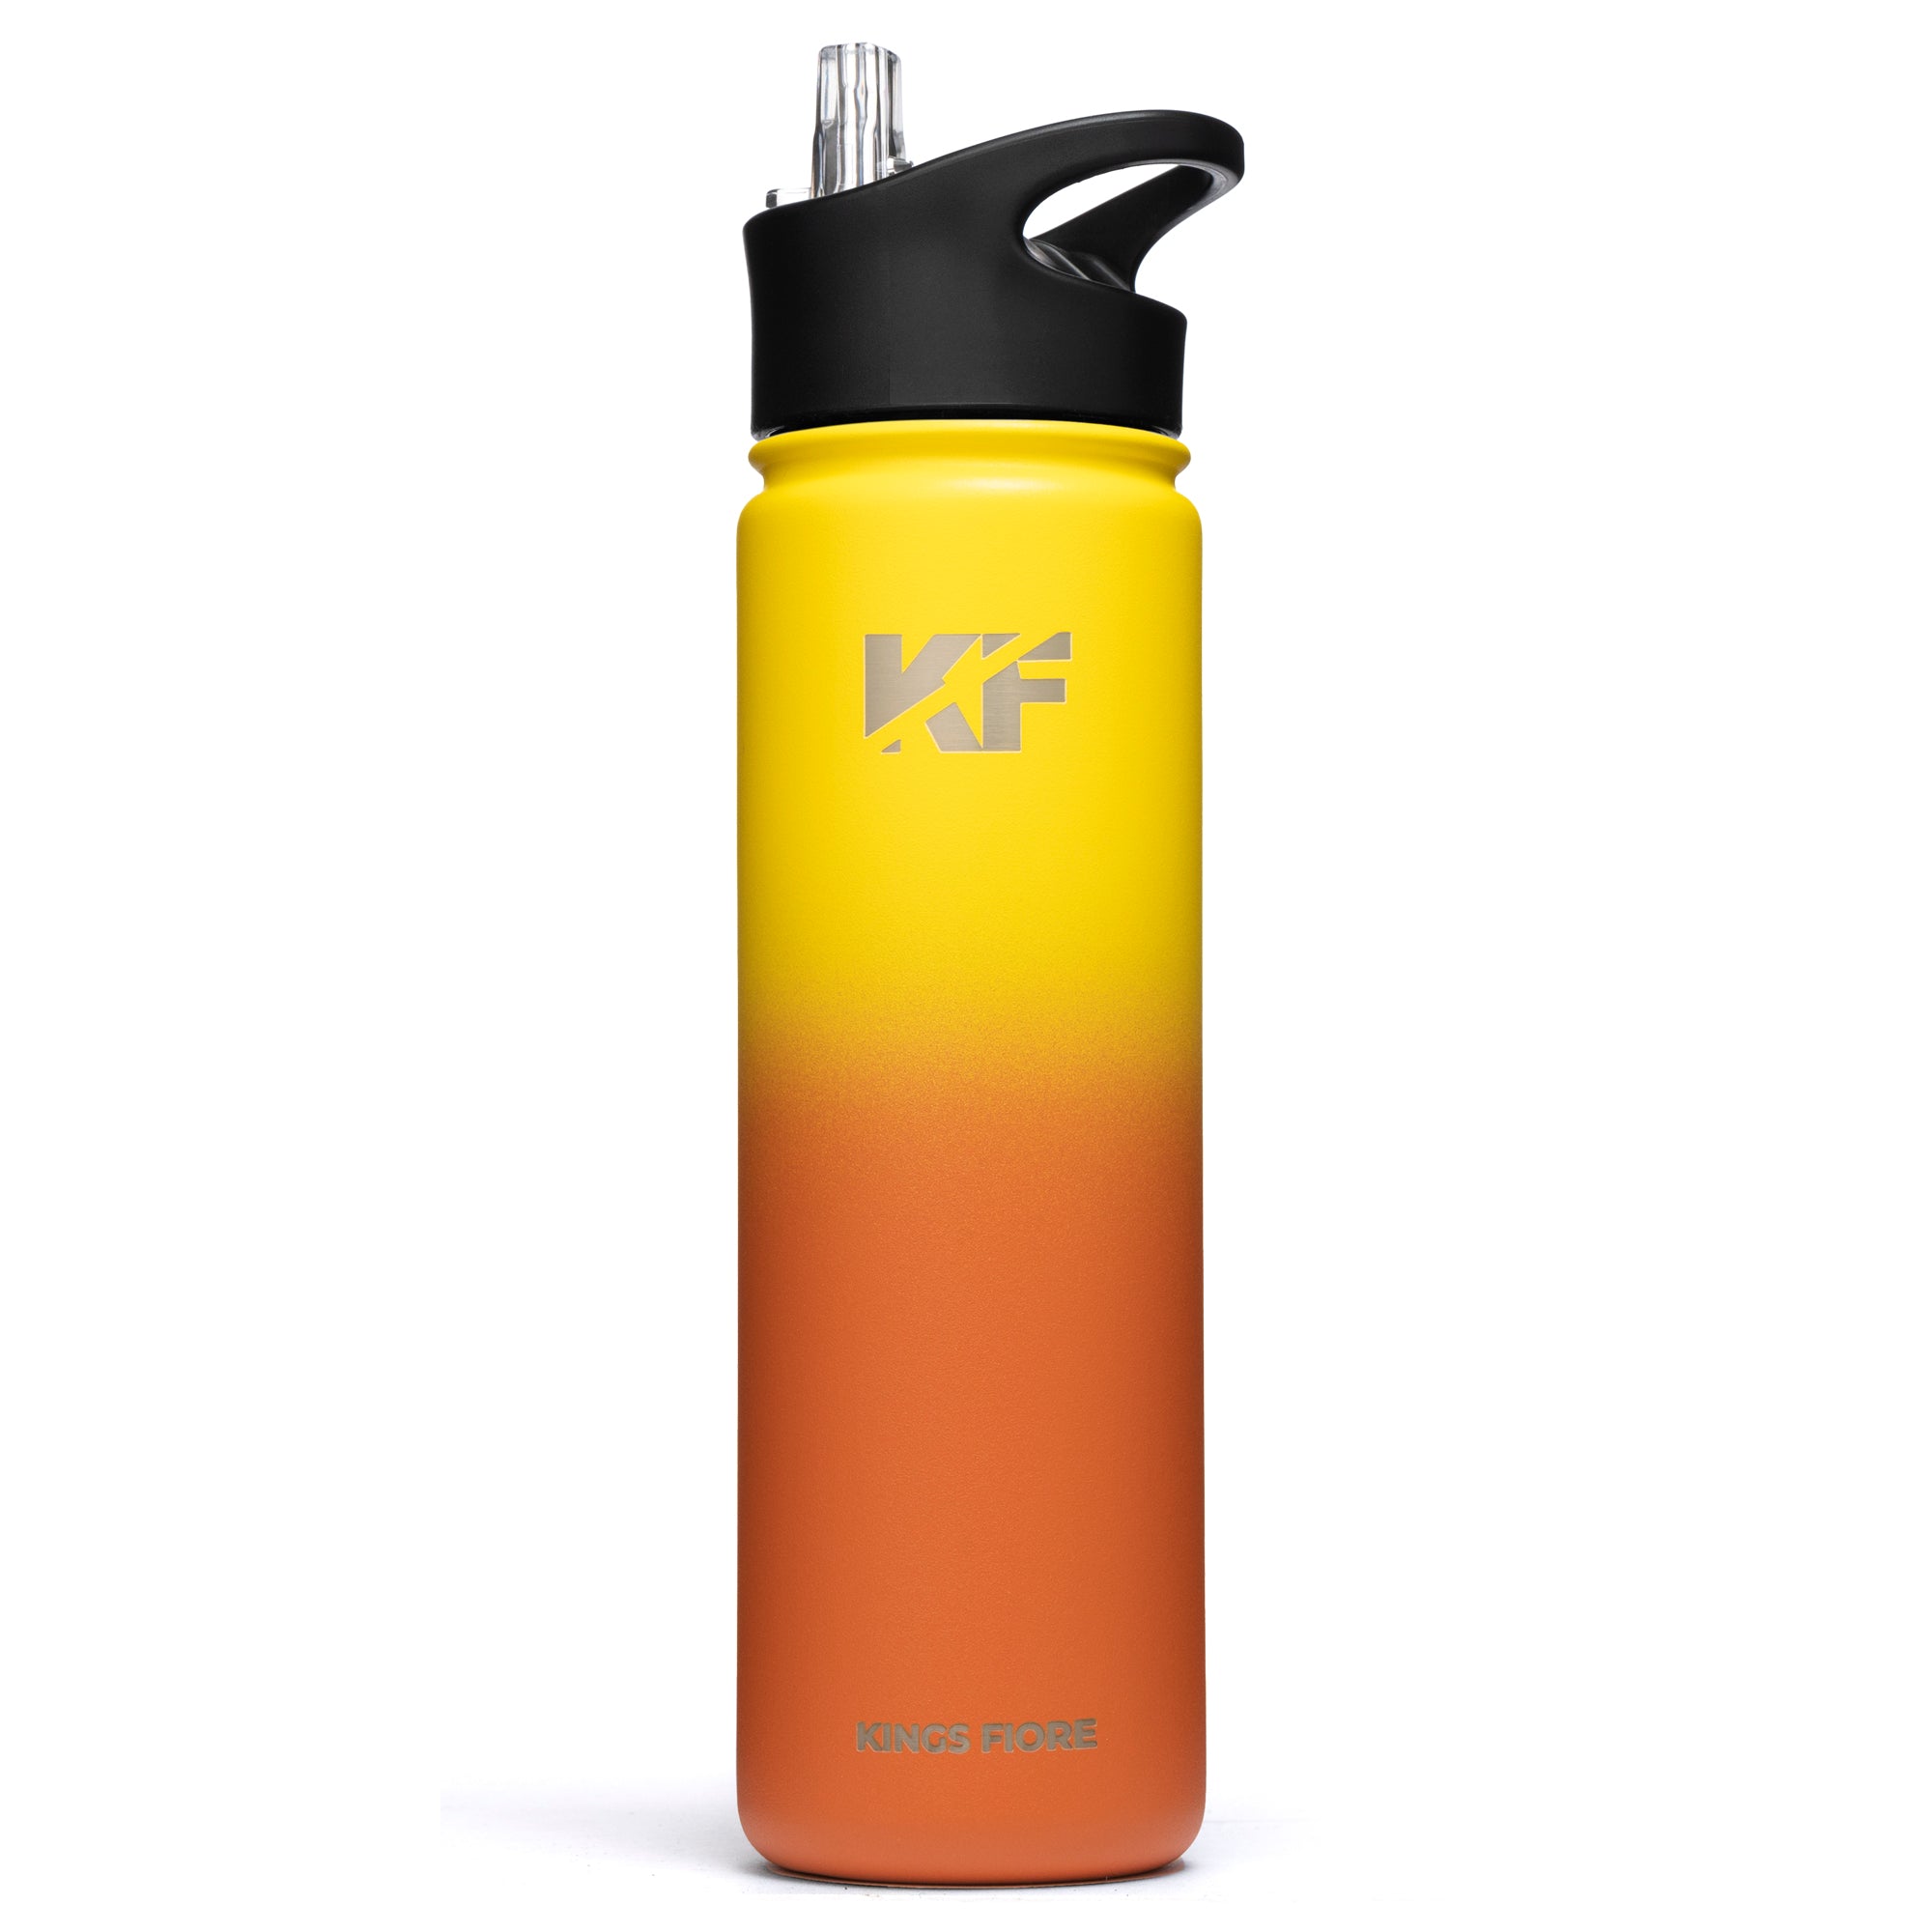 Kings Fiore Stainless Steel Water Bottle (22 oz, Orange)